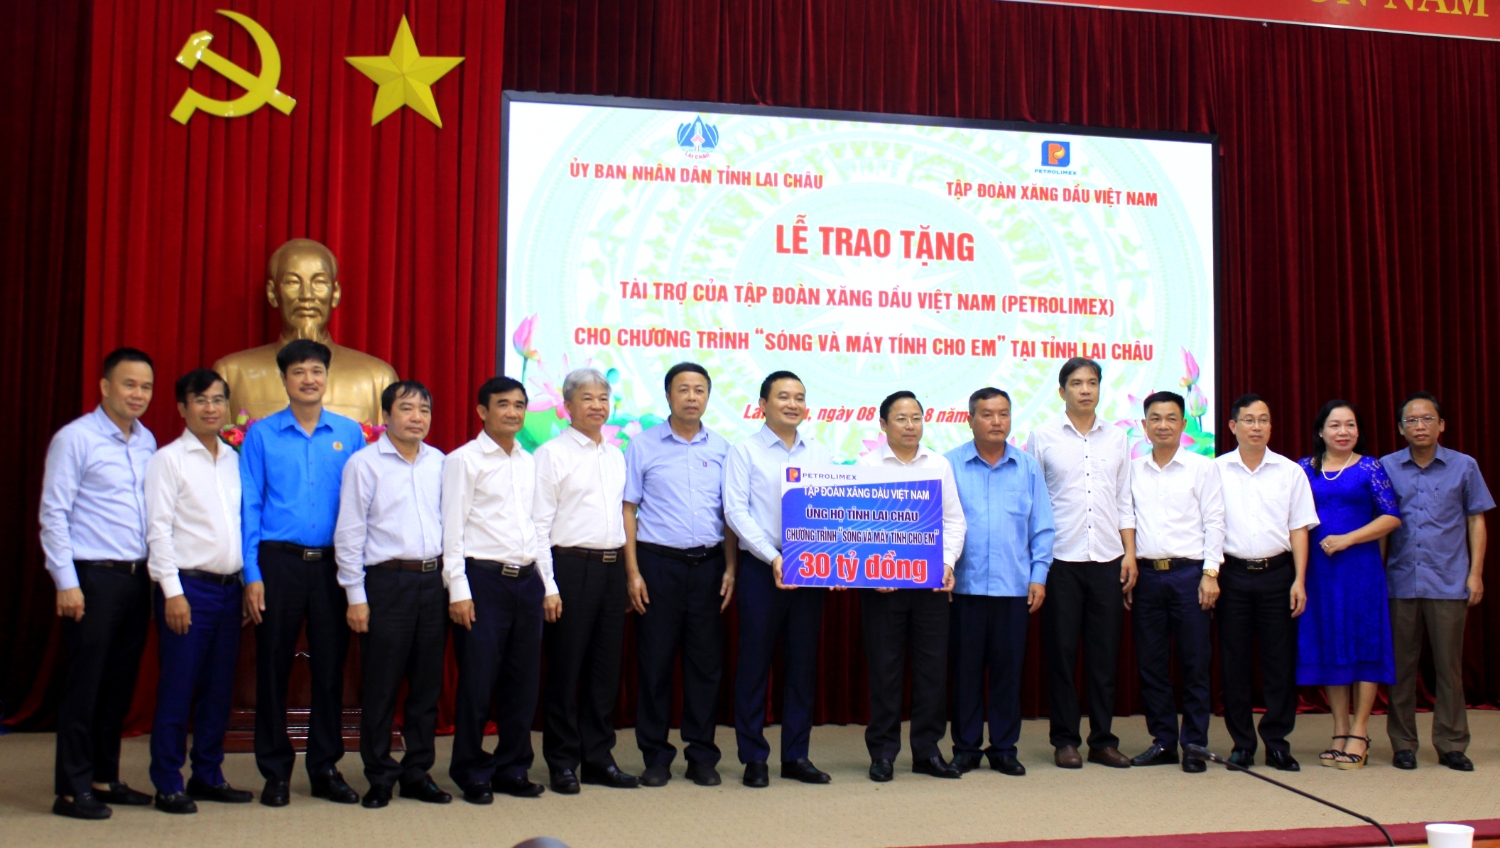 Lãnh đạo Tập đoàn Xăng dầu Việt Nam, Công ty Xăng dầu Lai Châu trao ủng hộ 30 tỷ đồng cho tỉnh Lai Châu phục vụ Chương trình "Sóng và máy tính cho em"